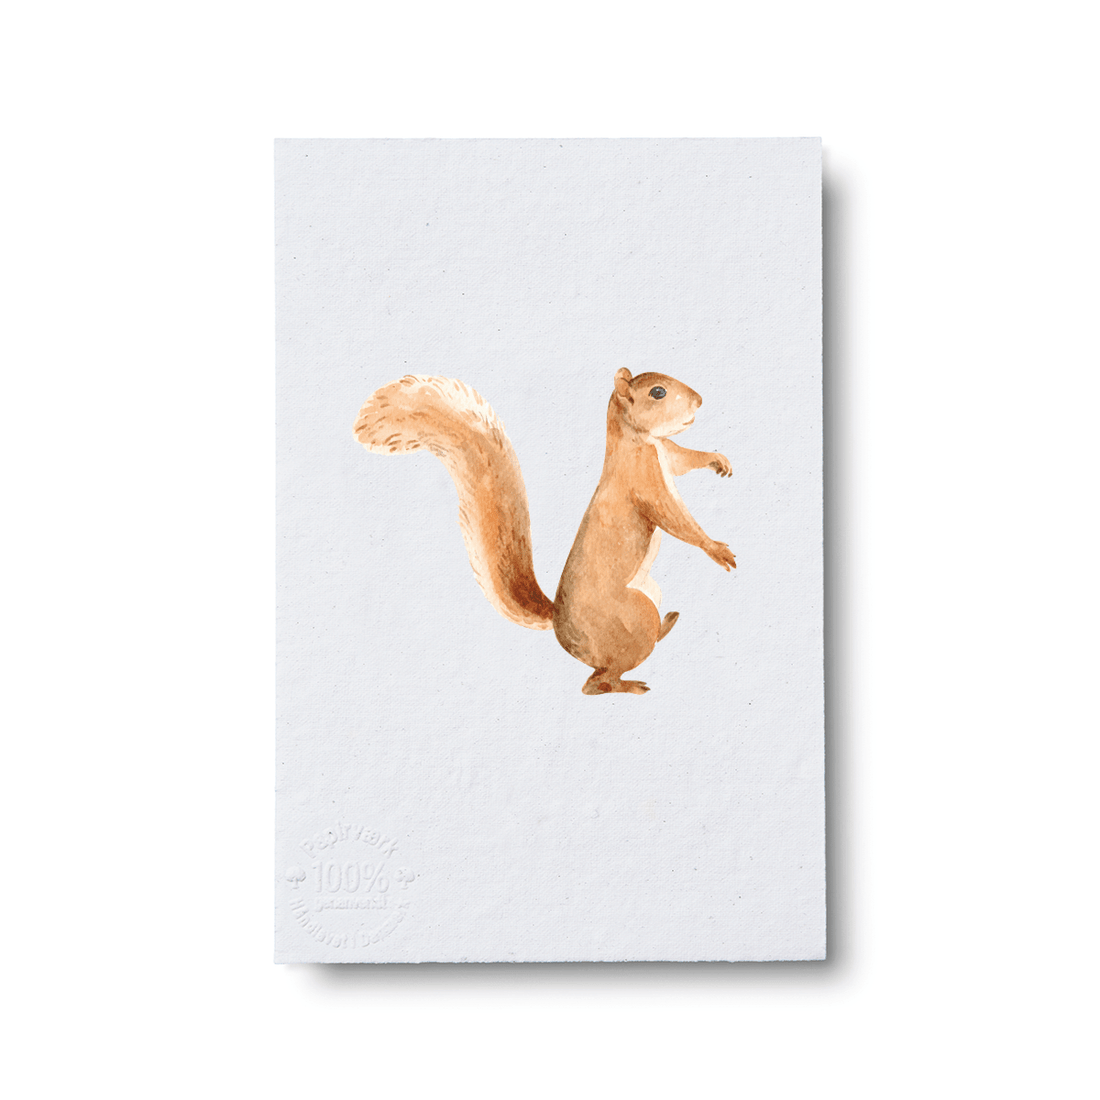 Squirrel - Papirværk